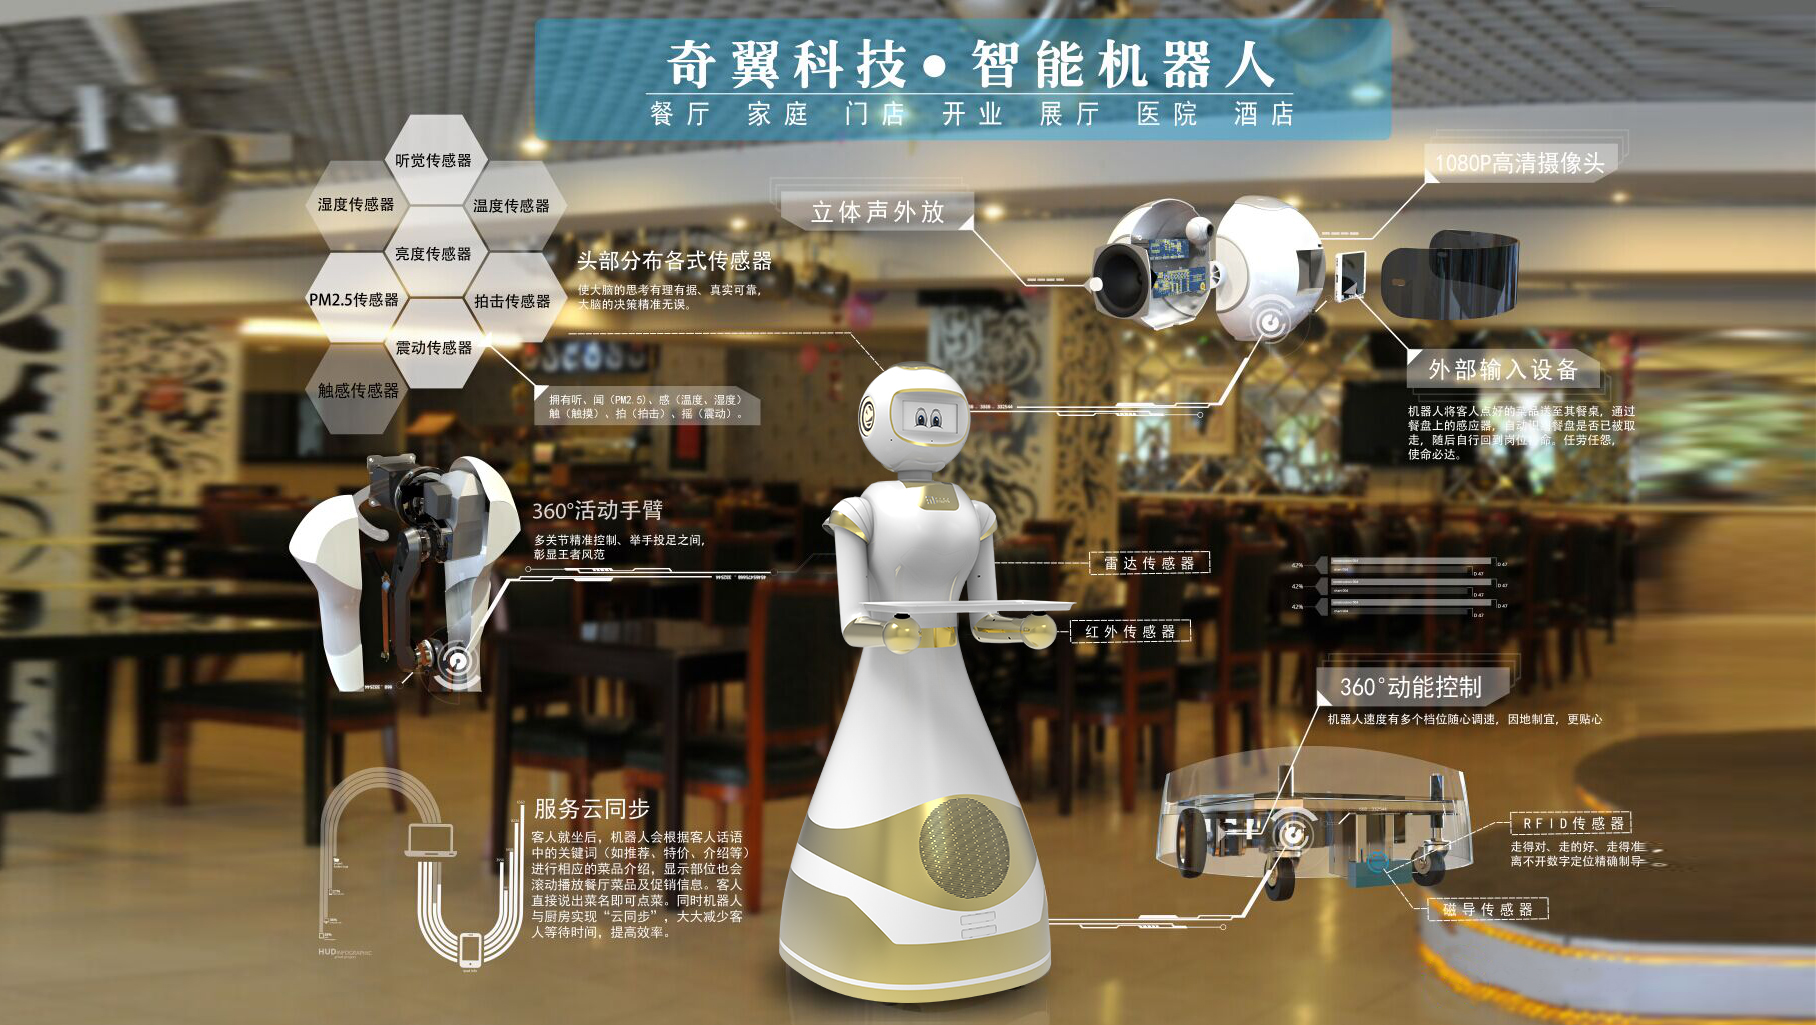 浙江奇翼科技智能机器人讲解机器人浙江奇翼科技智能机器人讲解机器人